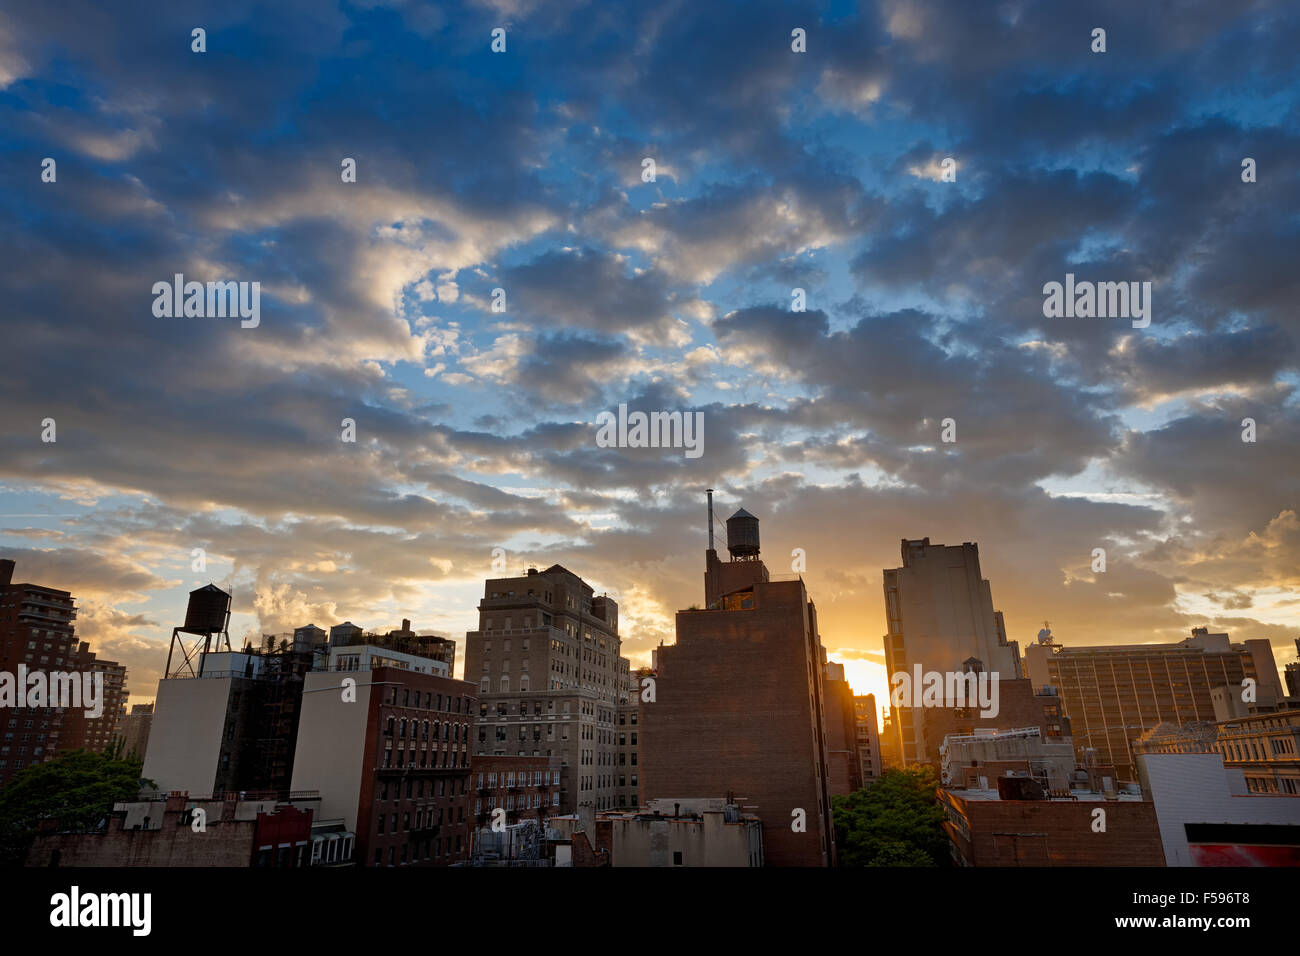 La ville de New York, quartier de Chelsea et sa skyline parsemé de réservoirs d'eau au coucher du soleil. Le long de la 8th Avenue, Manhattan, NYC Banque D'Images